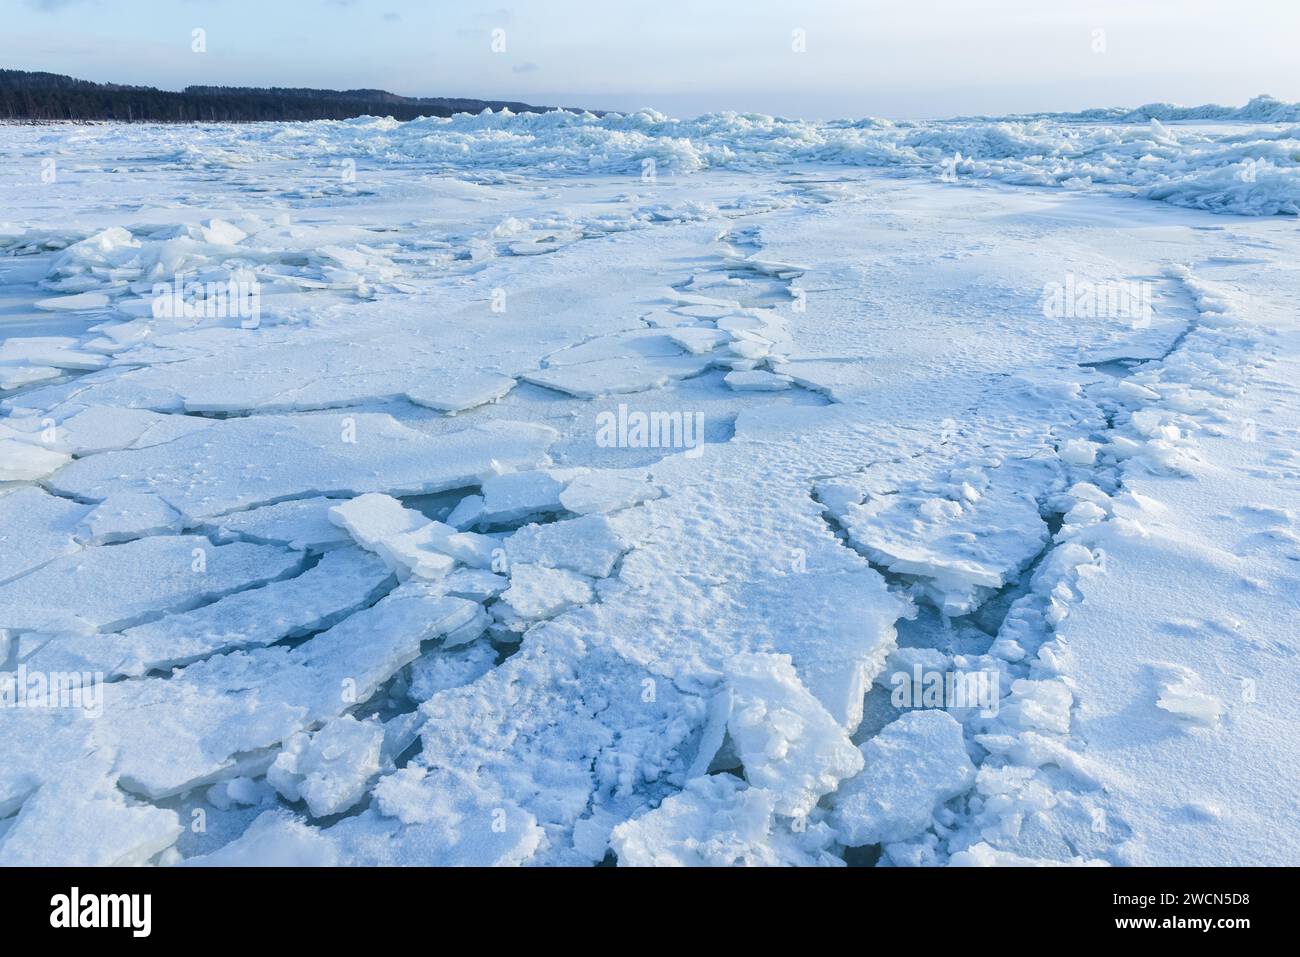 Bosses de glace couvertes de neige. Paysage avec côte de la mer Baltique gelée sur une journée d'hiver Banque D'Images